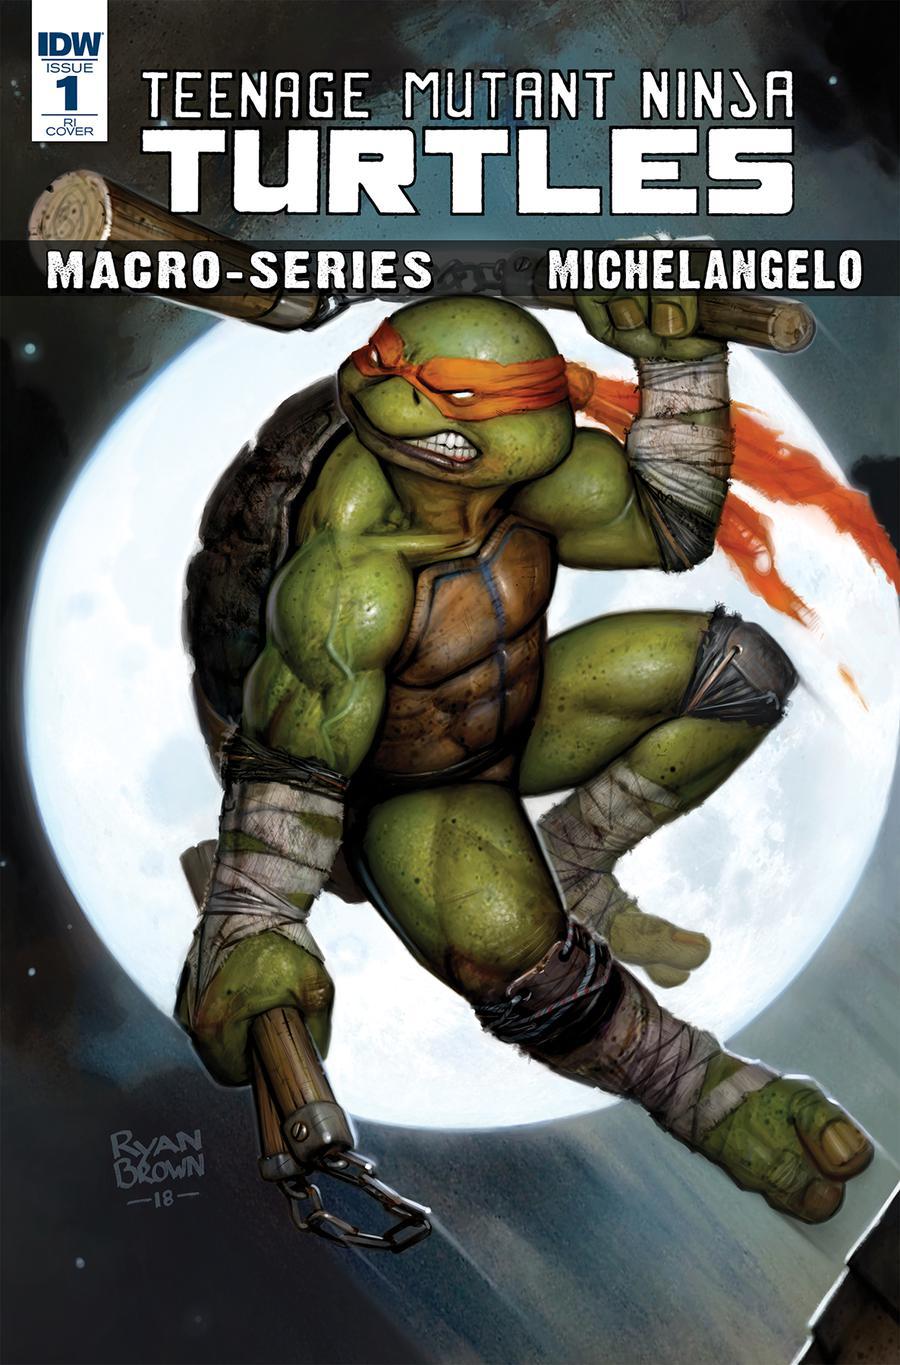 Teenage Mutant Ninja Turtles Macro-Series Michelangelo Cover B Variant Ryan Brown Cover